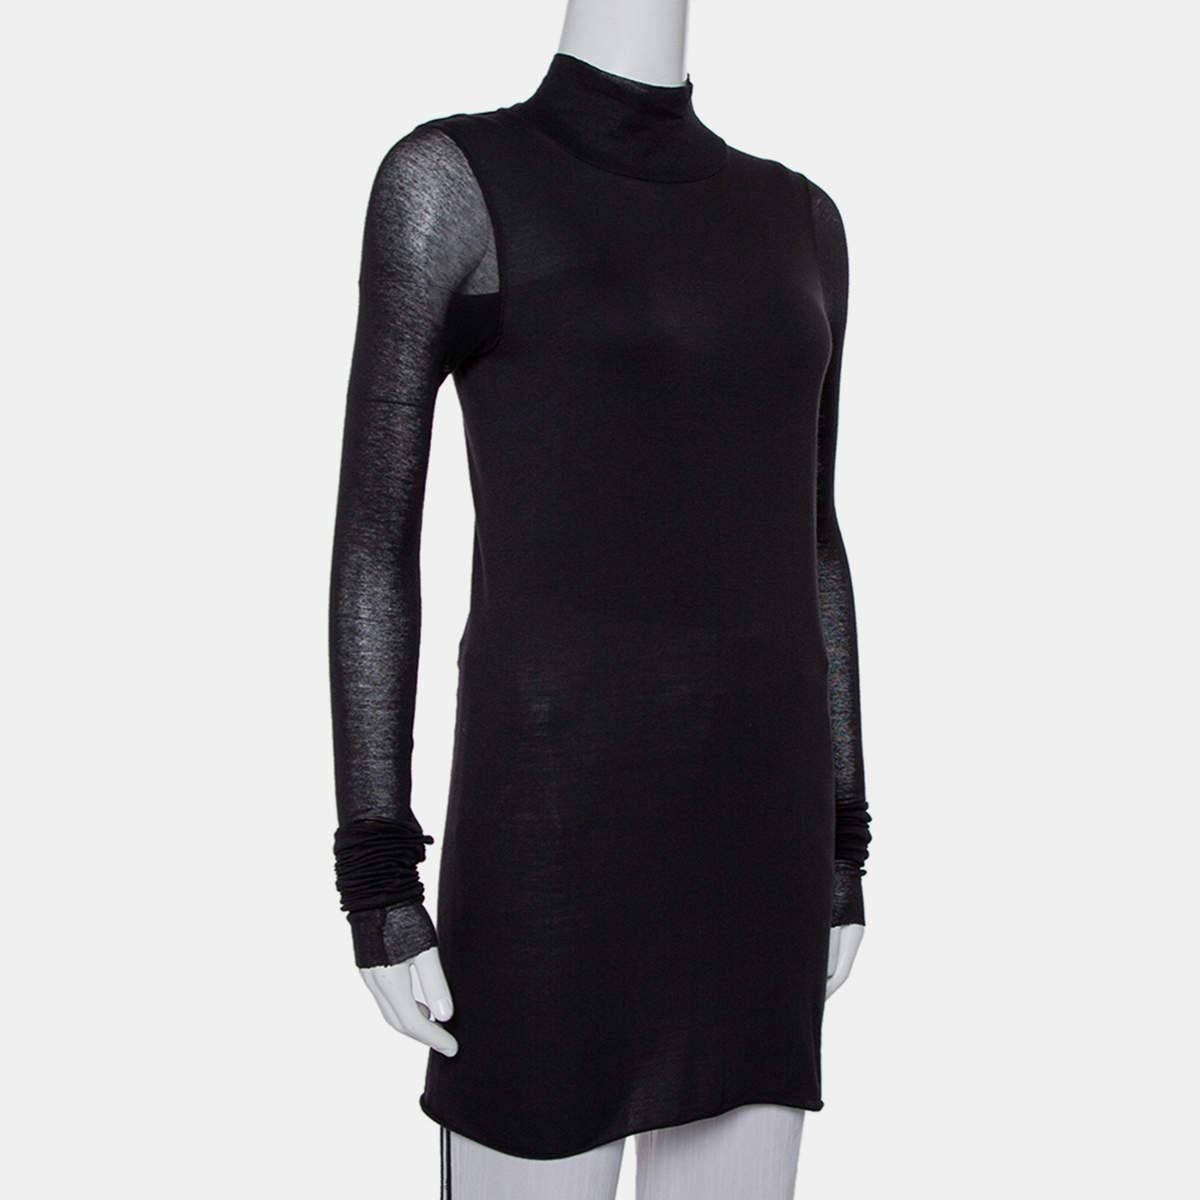 Dieses schwarze Minikleid ist aus der Rick Owens Lilies Collection'S. Das aus hochwertigen Materialien gestrickte Kleid hat einen Rollkragen, lange Ärmel und einen transparenten Effekt.

Enthält: Markenanhänger